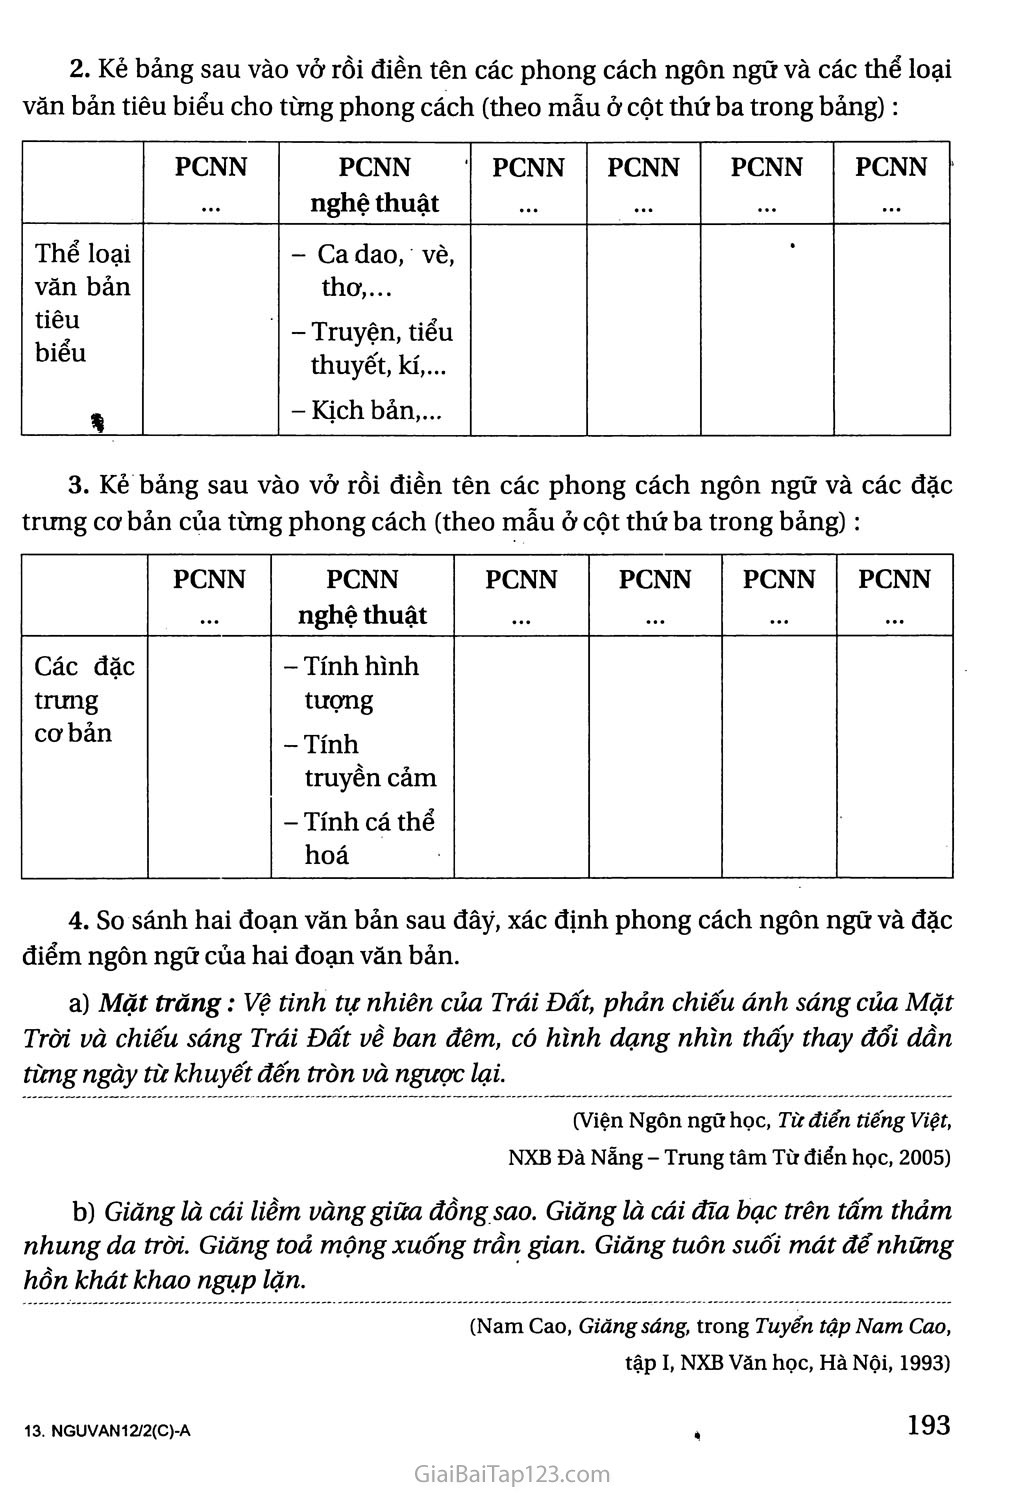 Tổng kết phần Tiếng Việt: lịch sử, đặc điểm loại hình và các phong cách ngôn ngữ trang 2